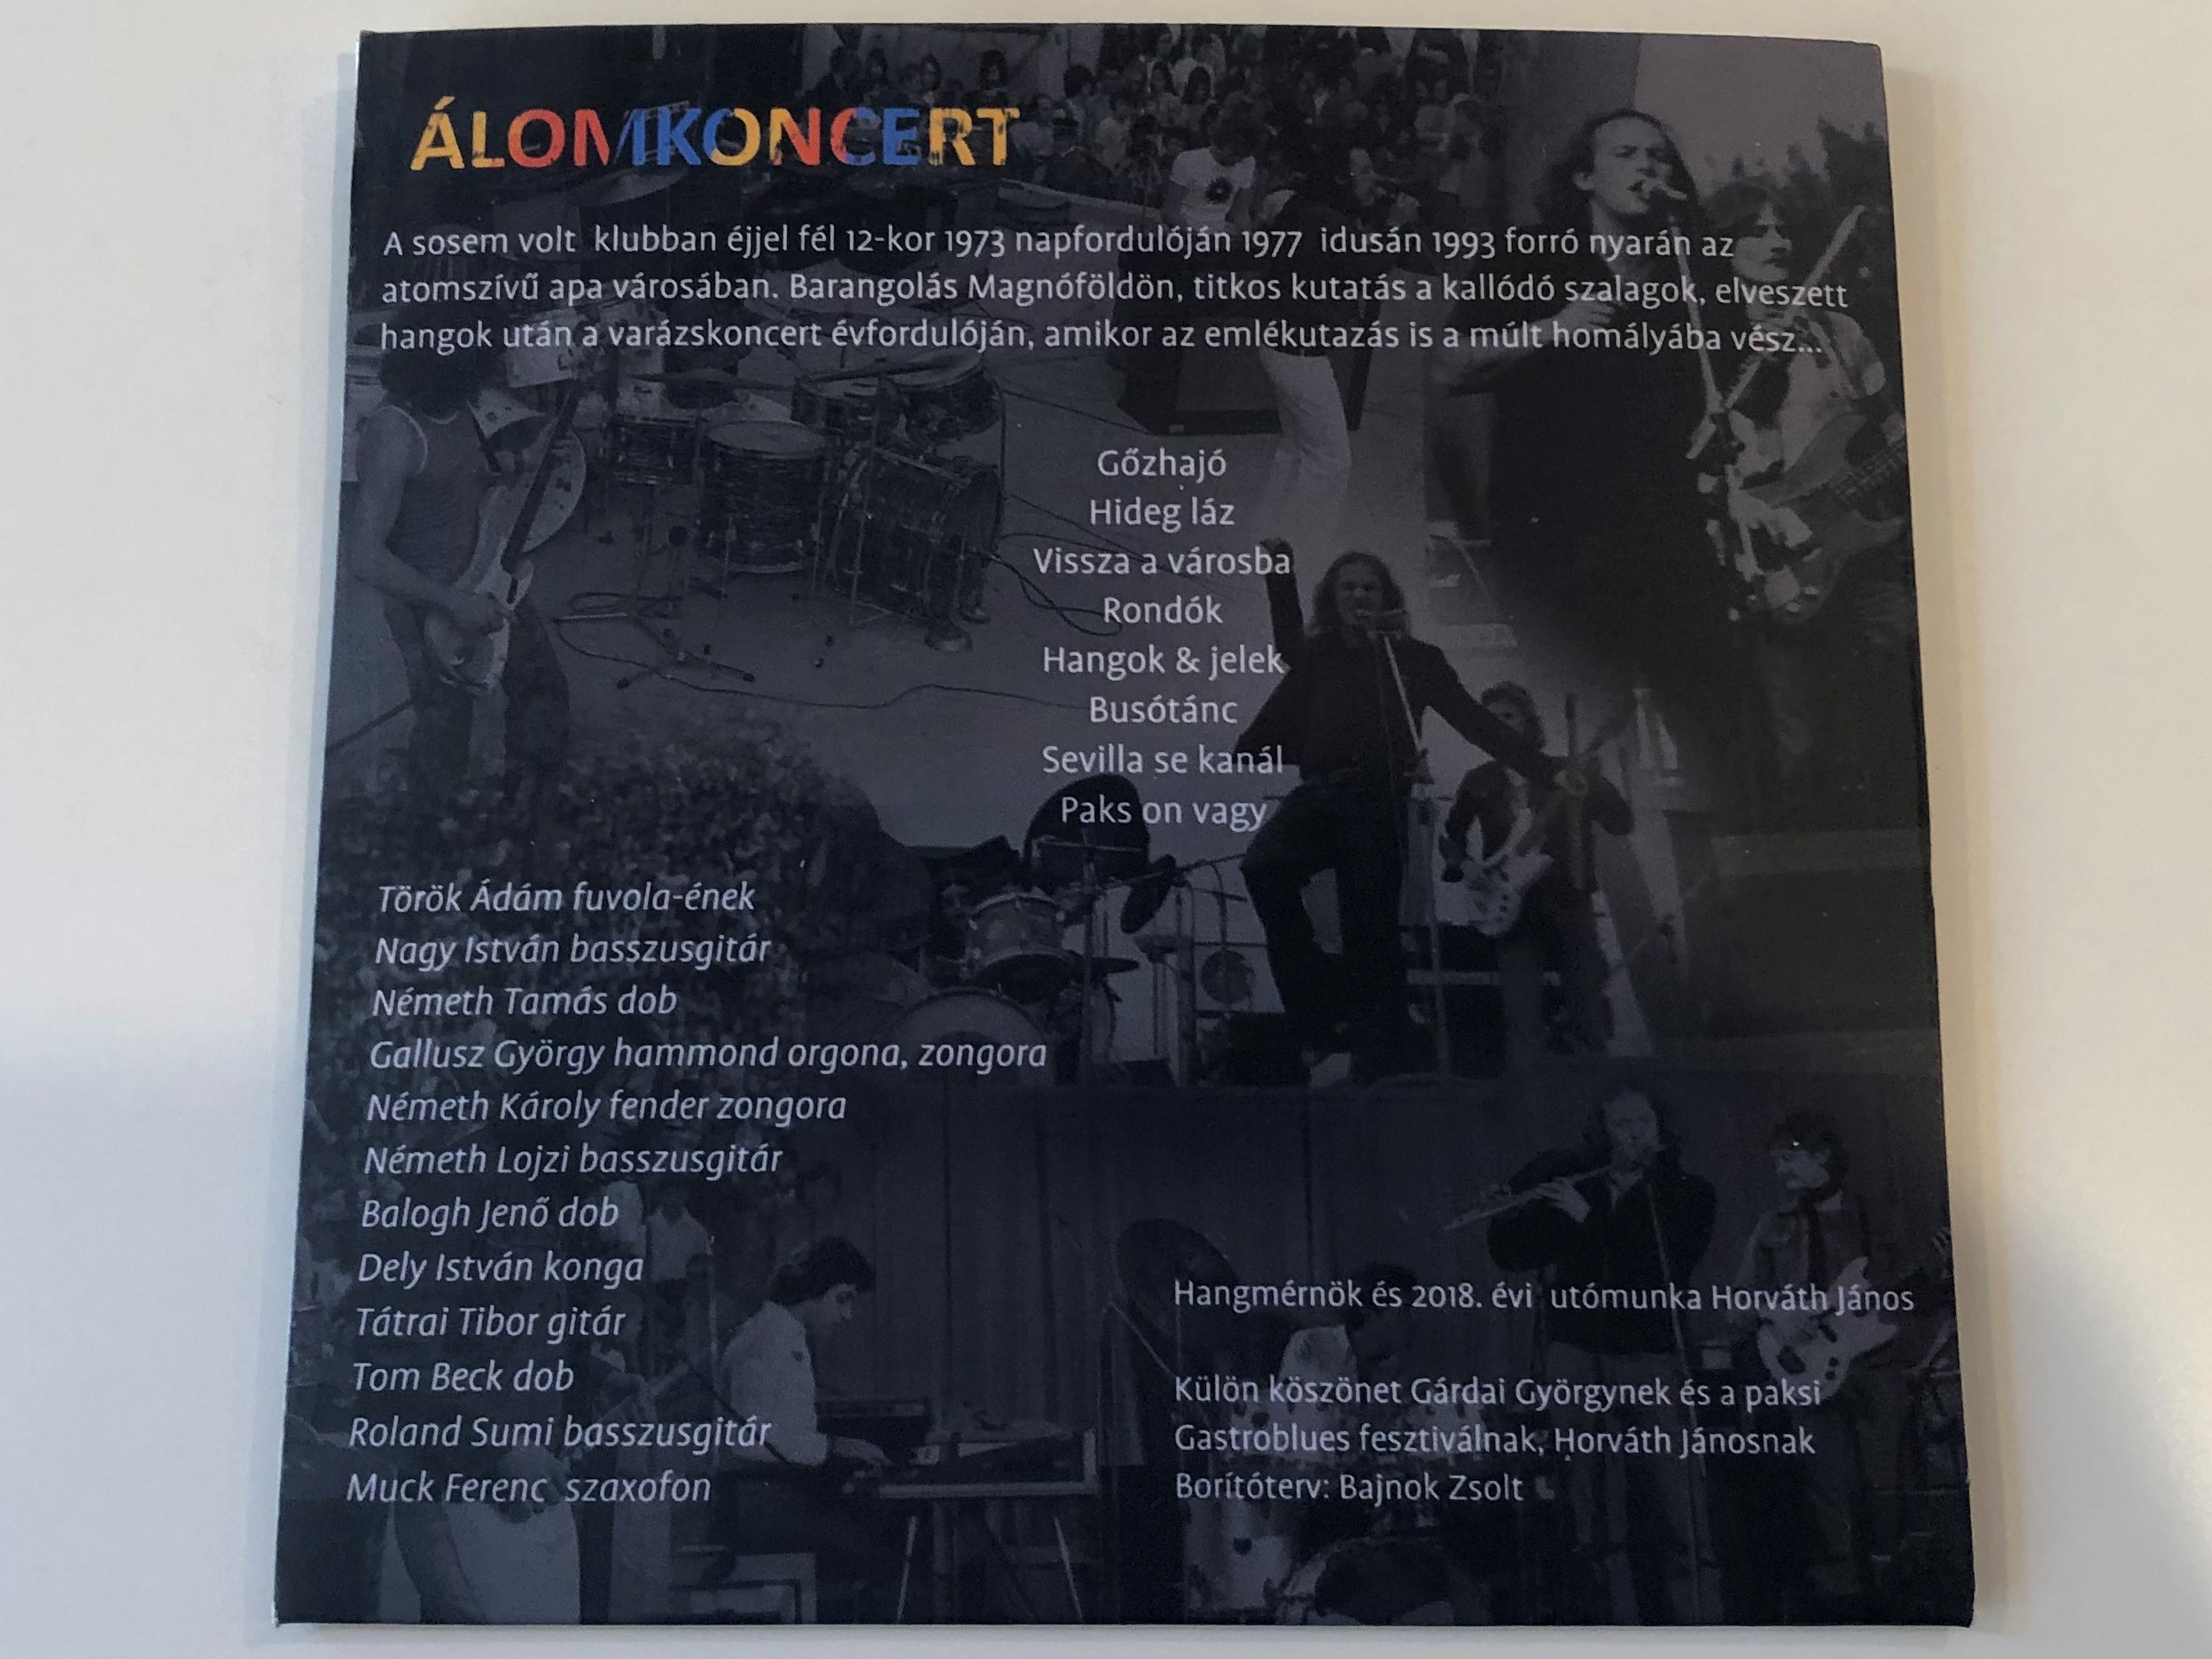 lomkoncert-audio-cd-2018-2-.jpg